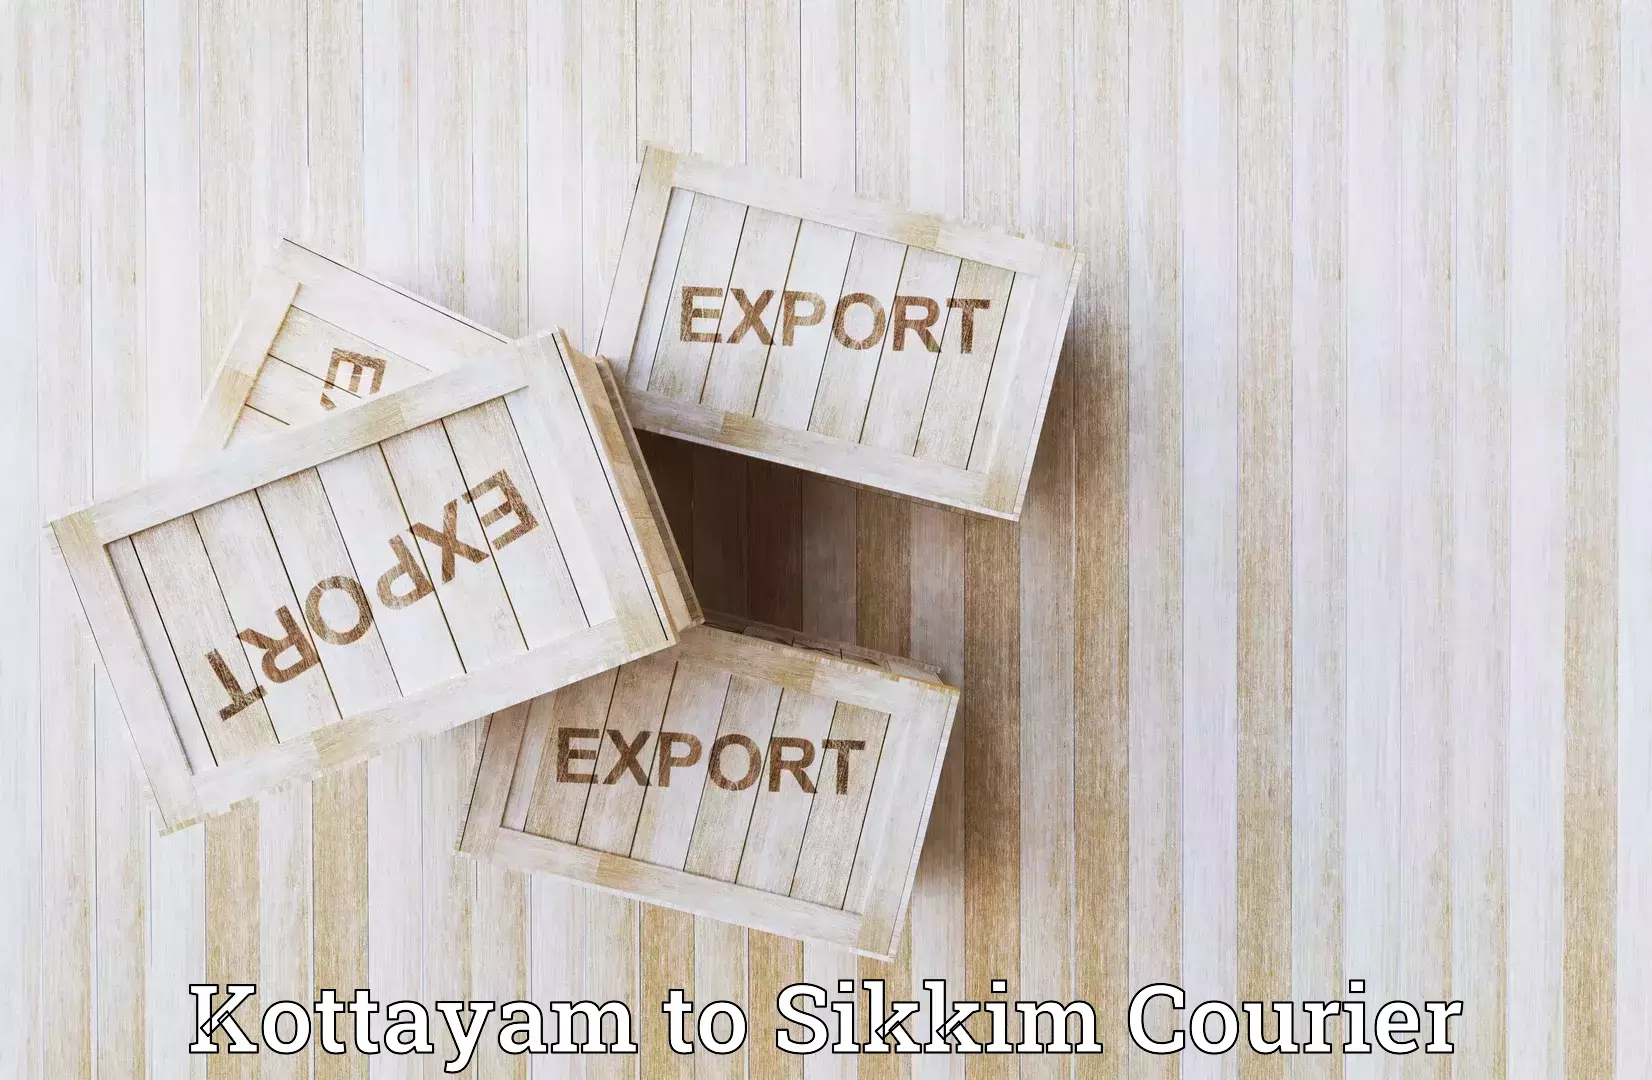 Reliable shipping partners Kottayam to Mangan